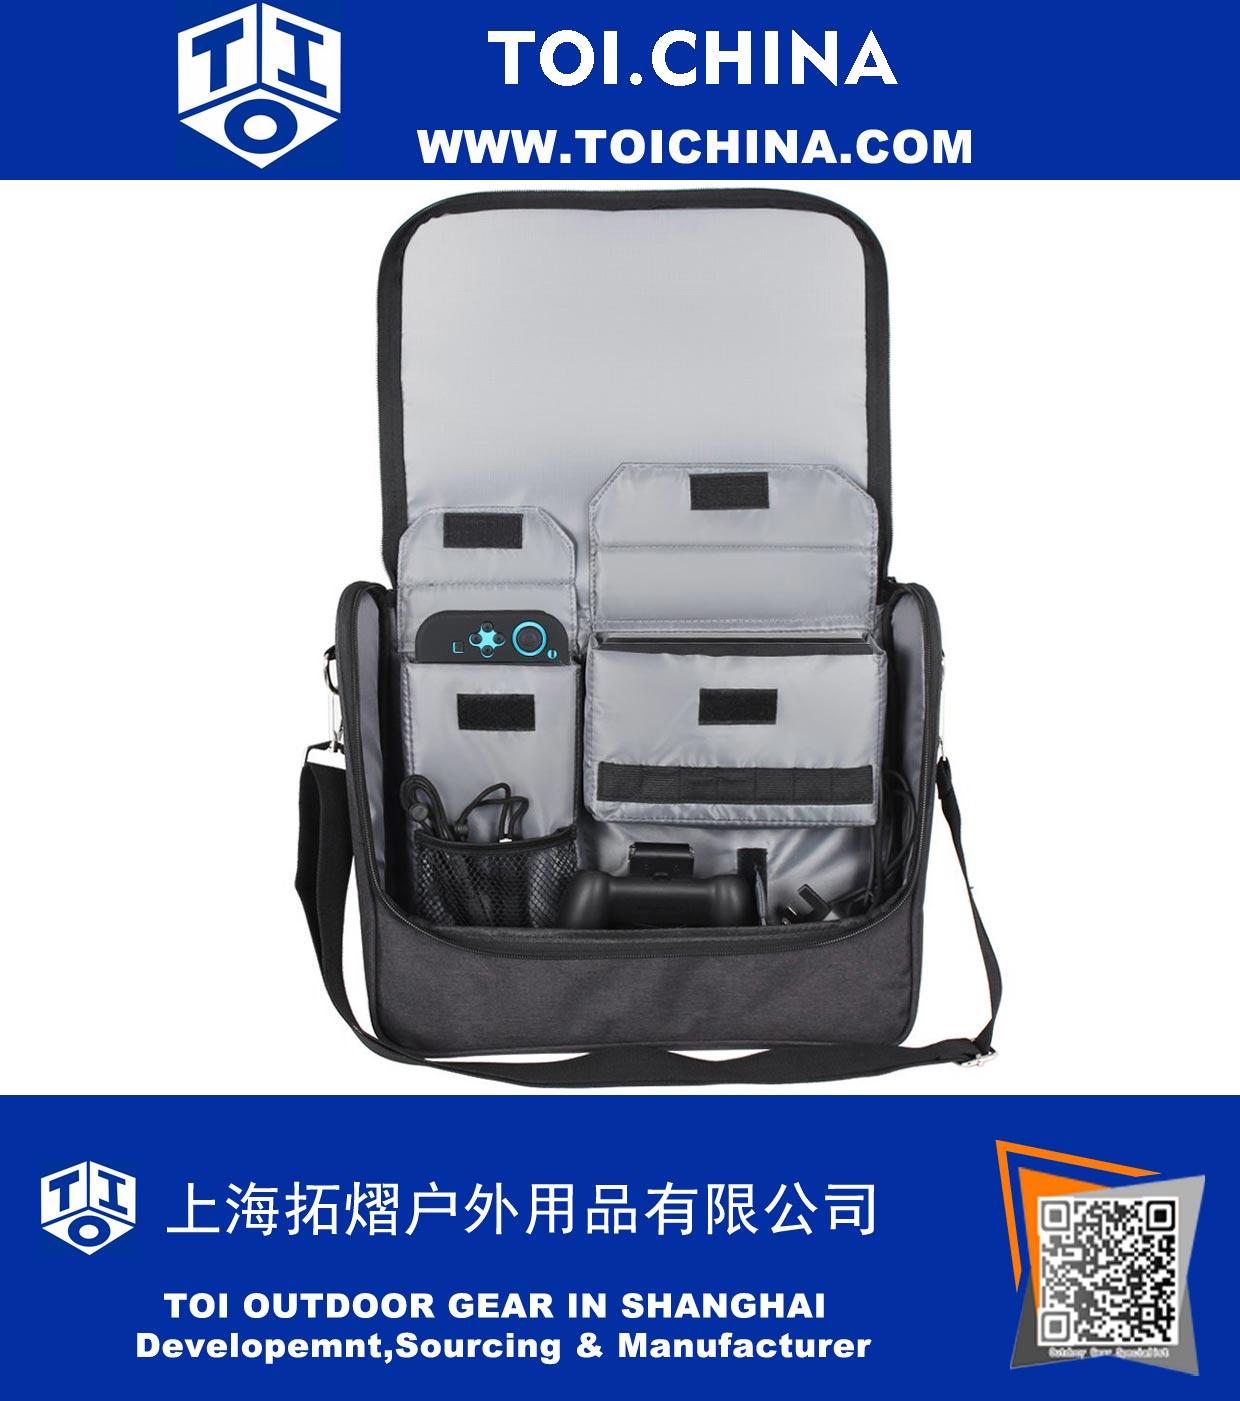 
Saco de viagem Carry Case Switch Messenger Bag Acessórios com ombro ajustável e 7 cartuchos de jogo
